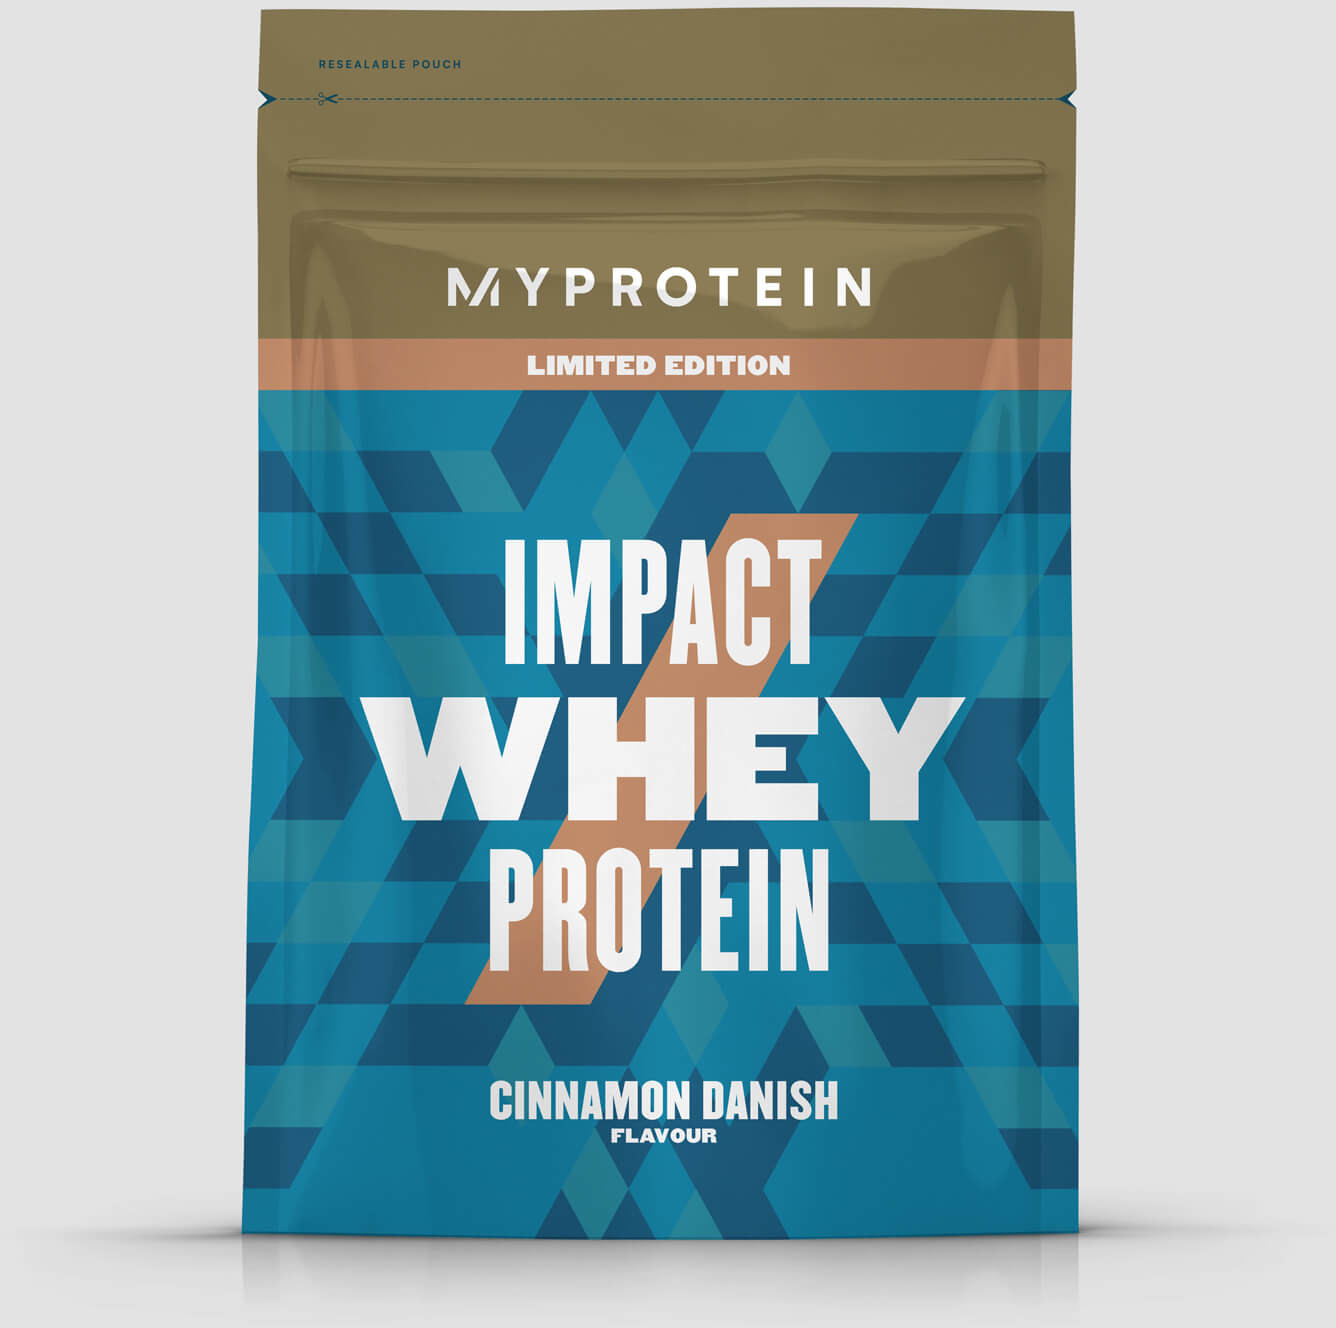 Myprotein Białko Serwatkowe (Impact Whey Protein) - 500g - Cynamonka